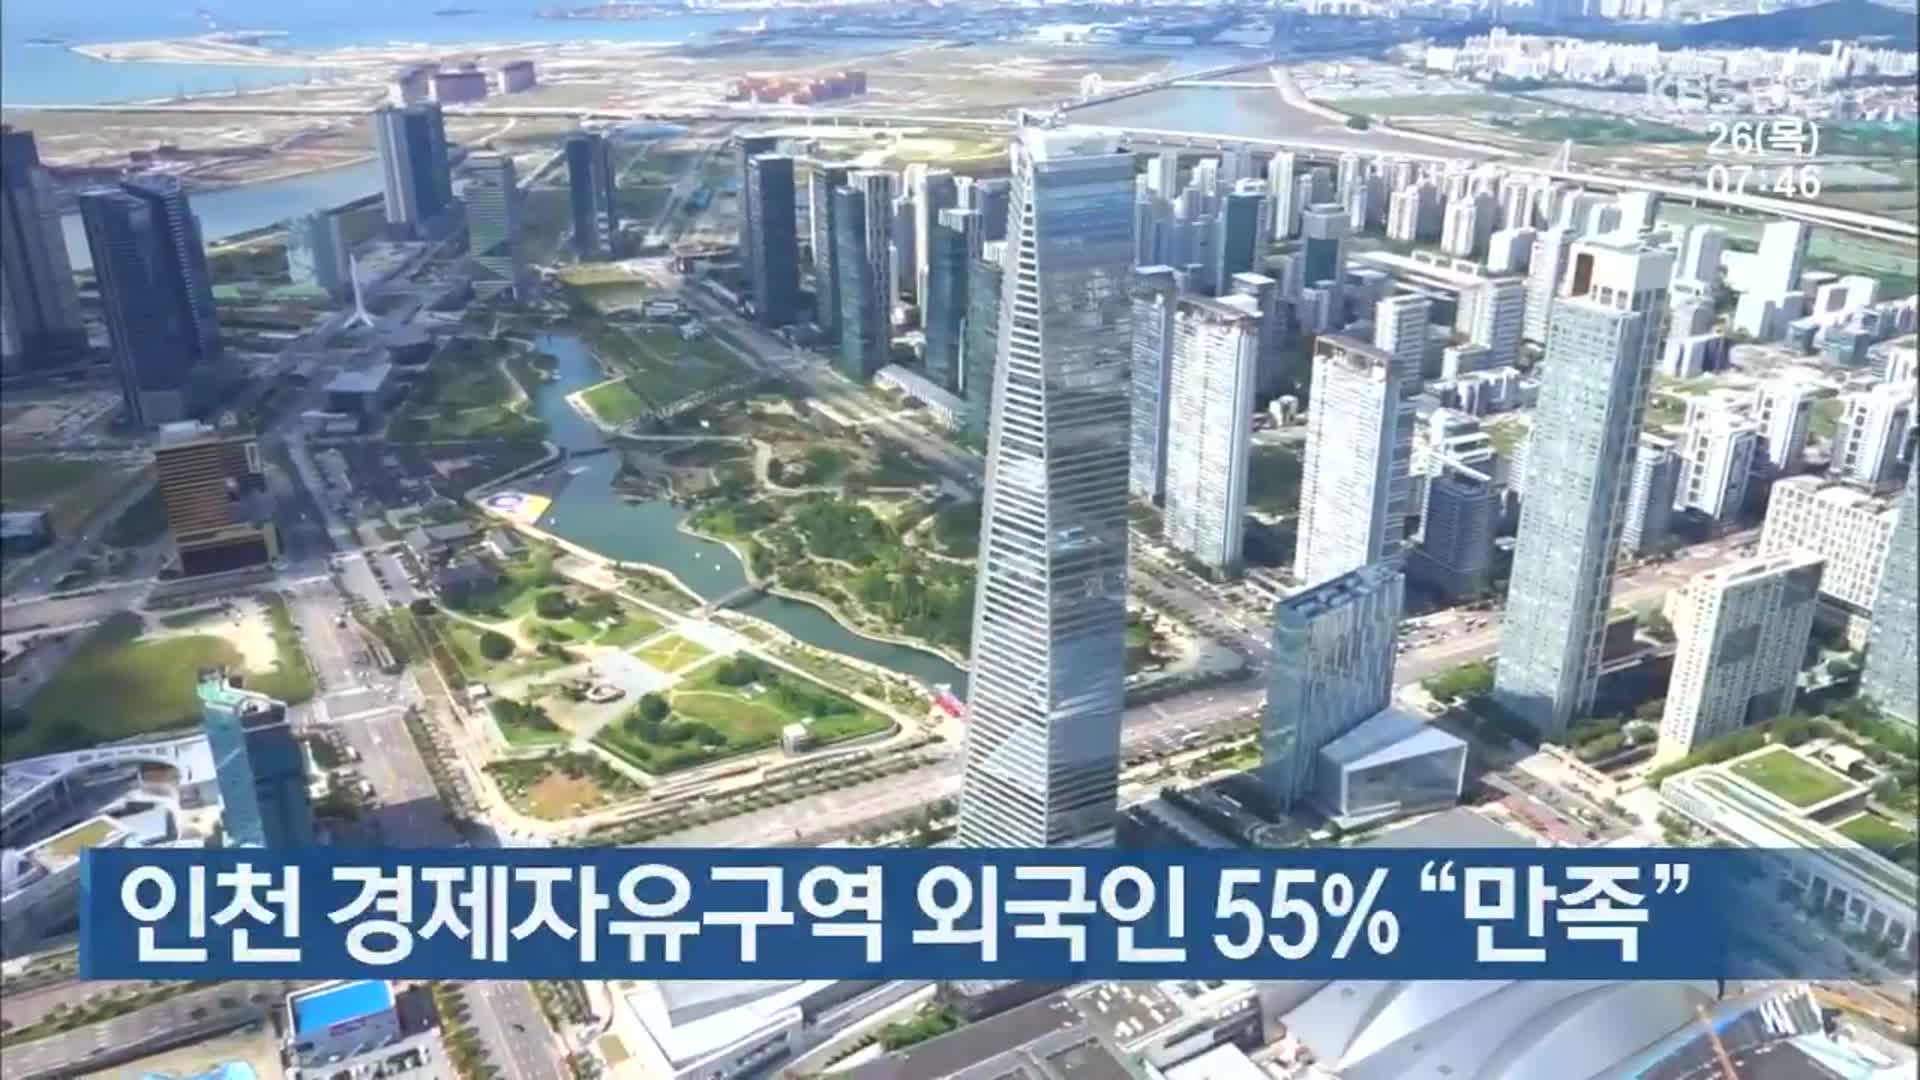 인천 경제자유구역 외국인 55% “만족”